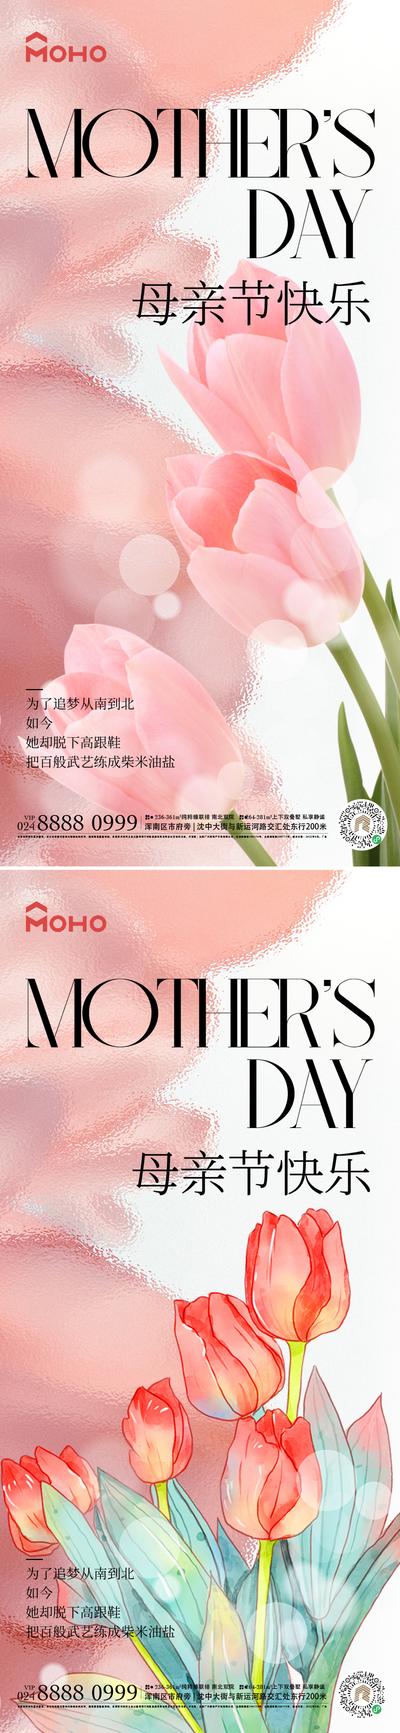 【南门网】广告 海报 节日 母亲节 母亲 母女 母子 爱 母爱 感恩 拥抱 呵护 陪伴 鲜花 送花 花